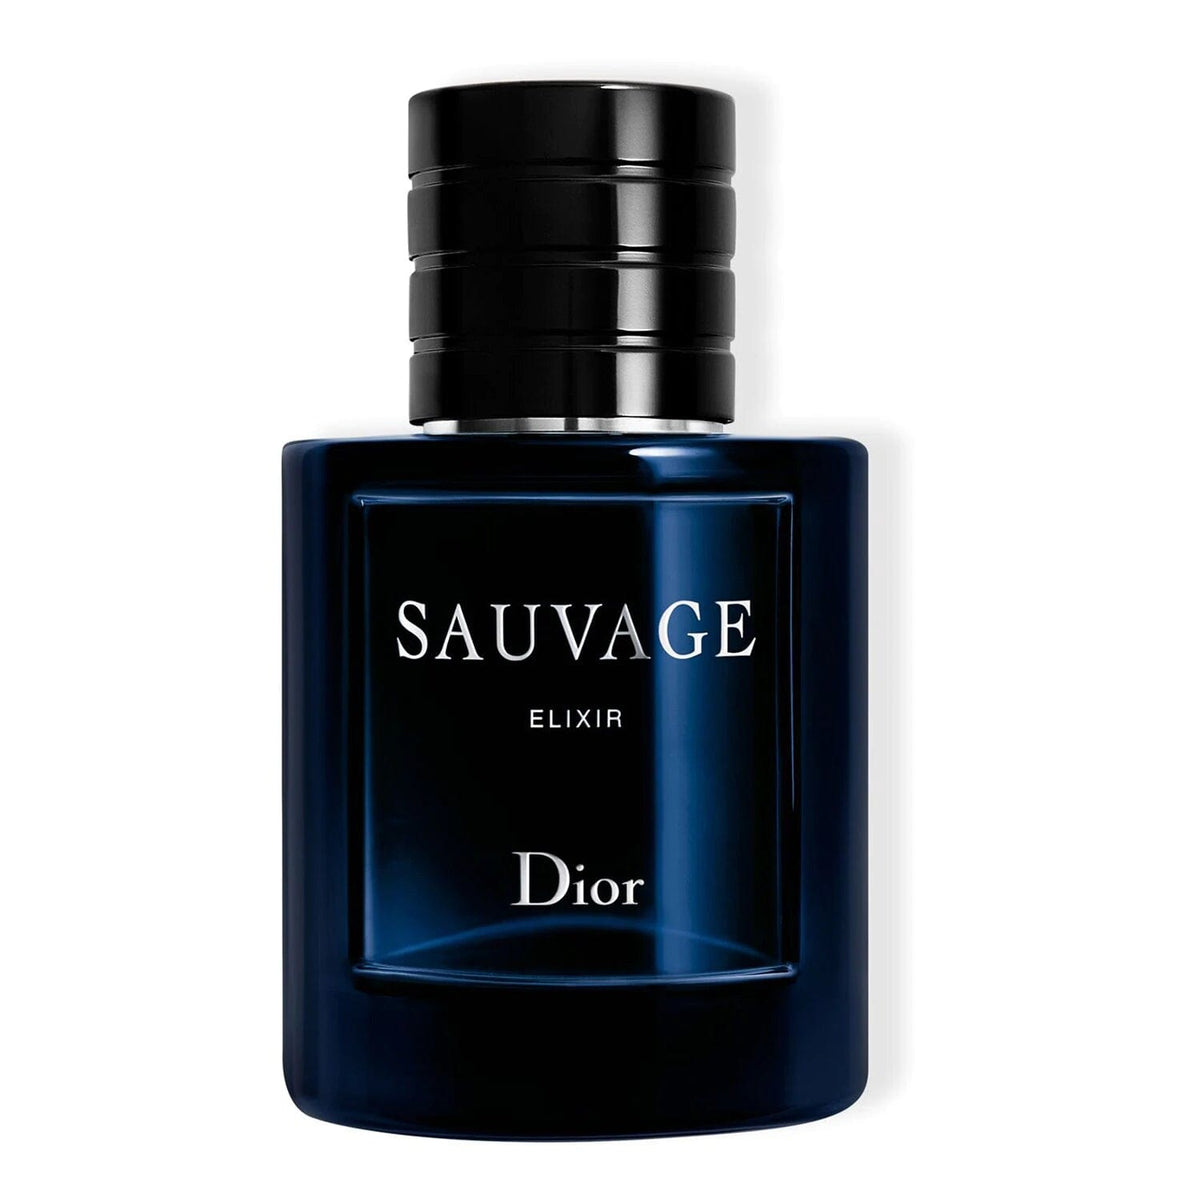 Sauvage Elixir de Dior